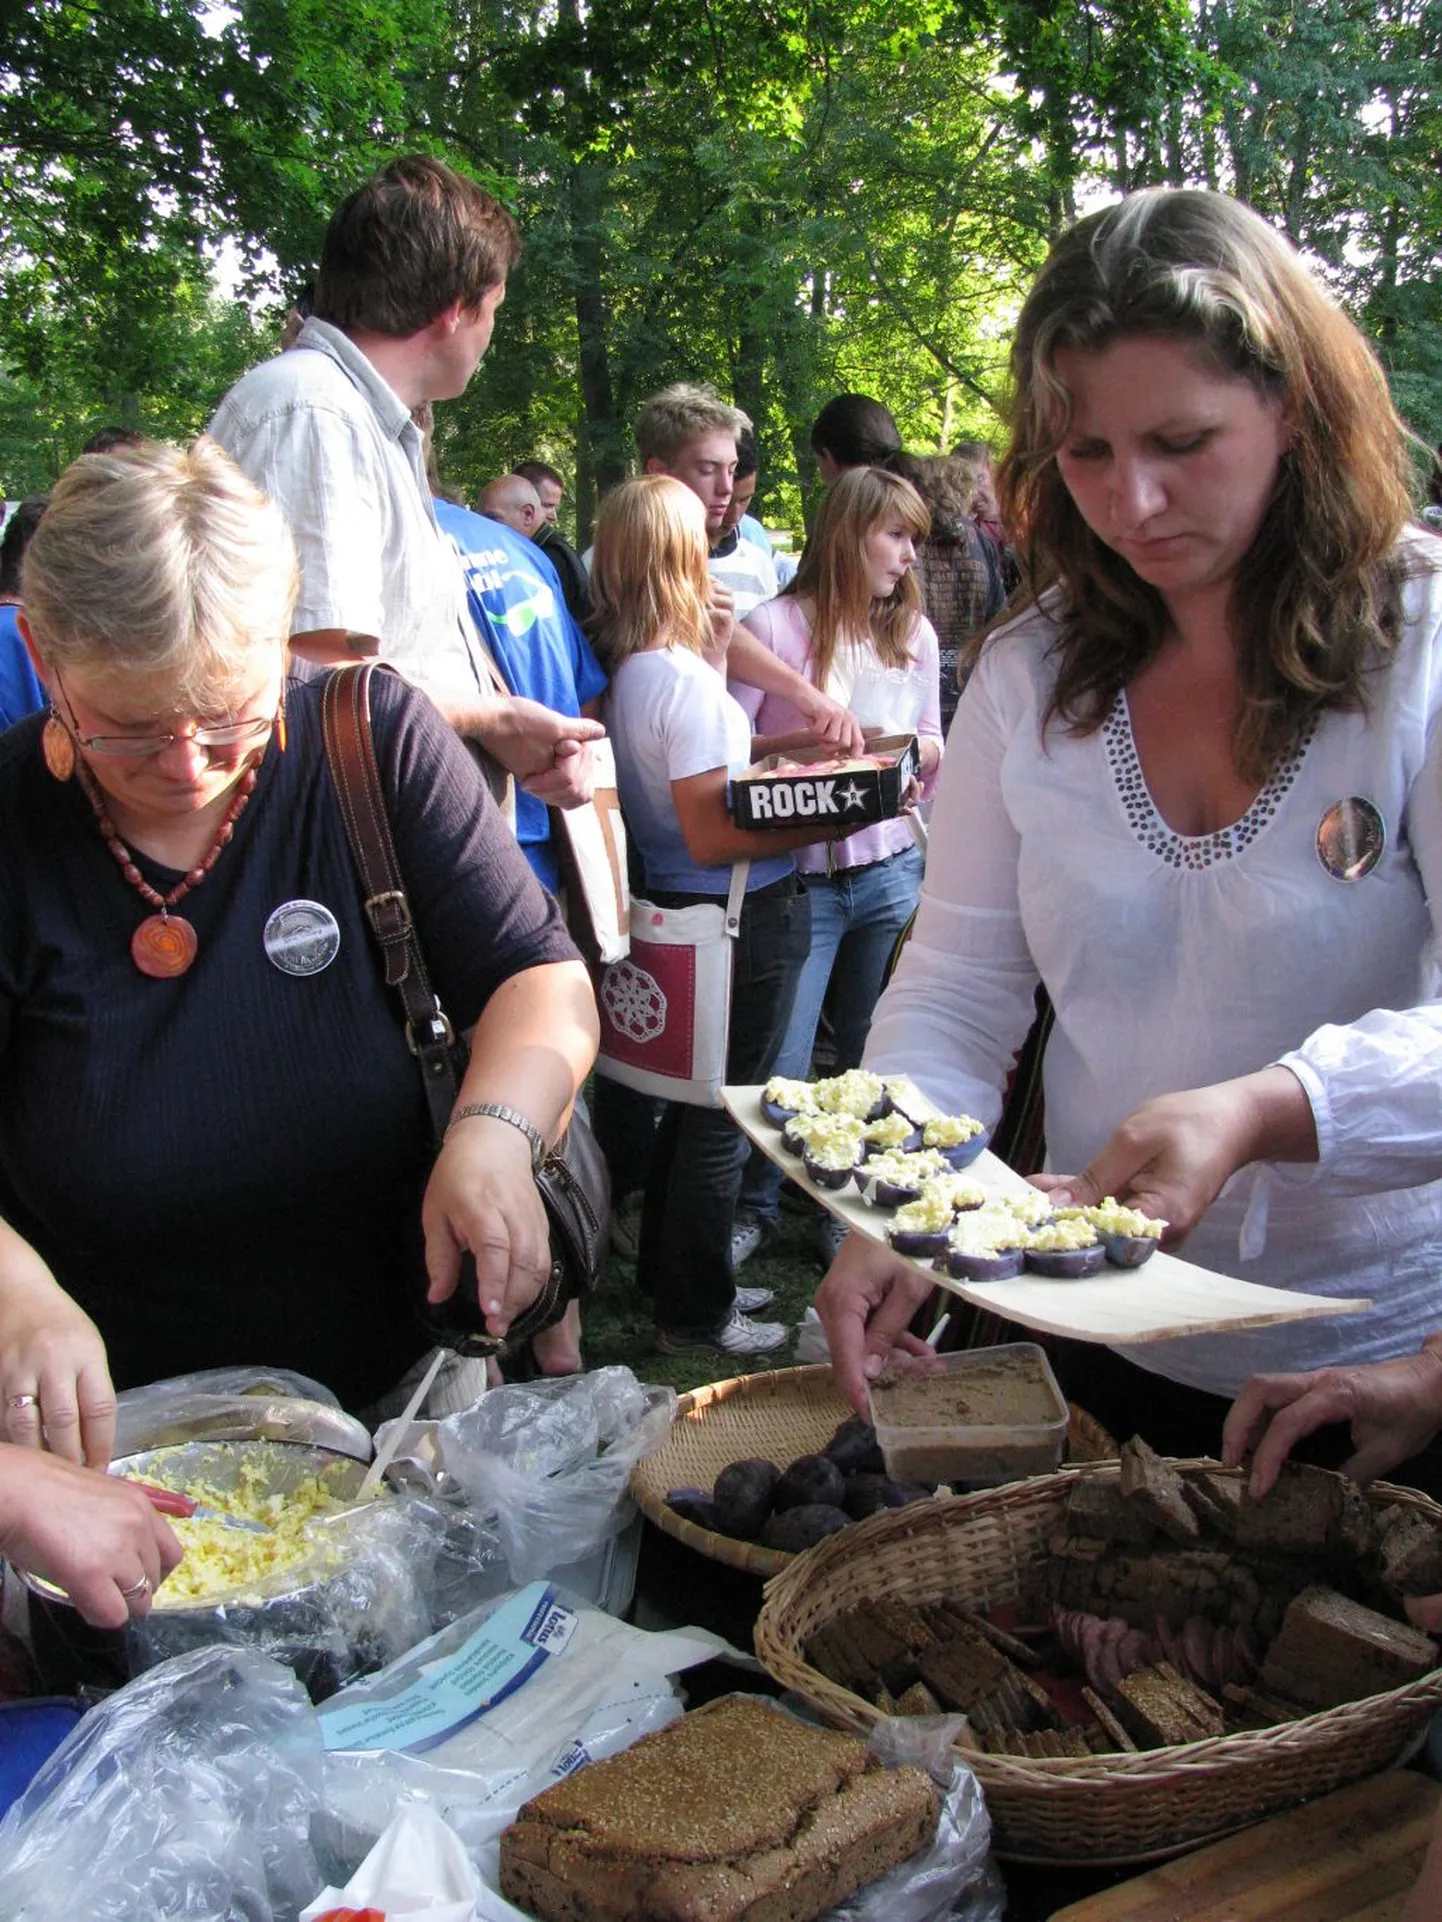 Pärnumaa esinduse köögipool maakondade toite tutvustaval õhtusöögil Rannu pargis, siniseid keedukartuleid ja munavõid serveerivad (vasakul) Urve Selberg Saulepist ja Õnne Salk Tõhelast.